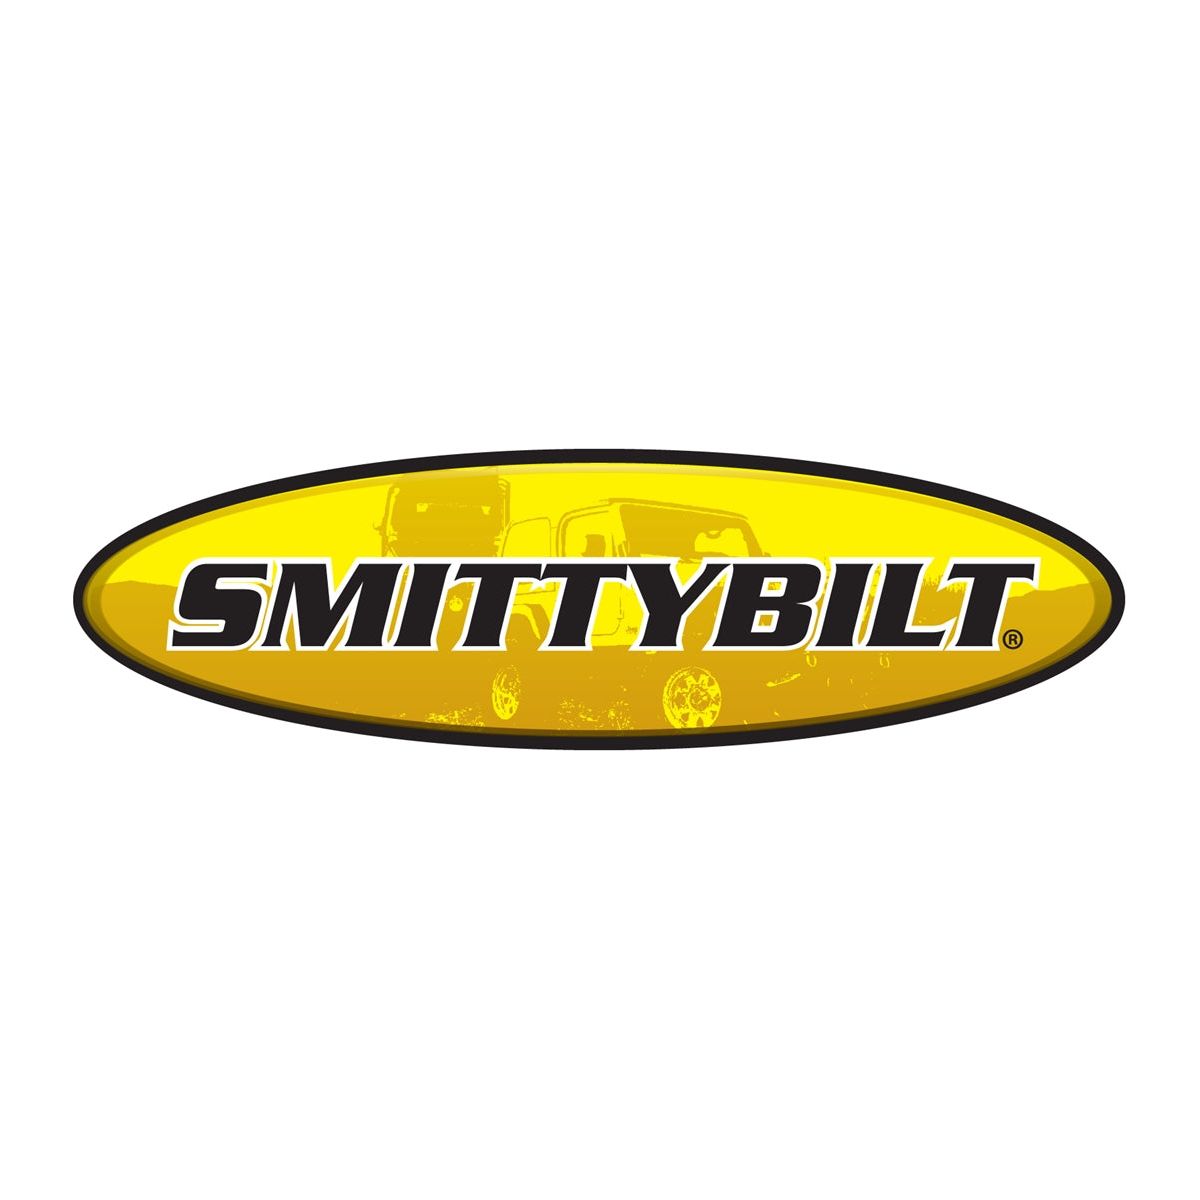 Smittybilt X2O 17.5K GEN2 17500lb Wireless Winch